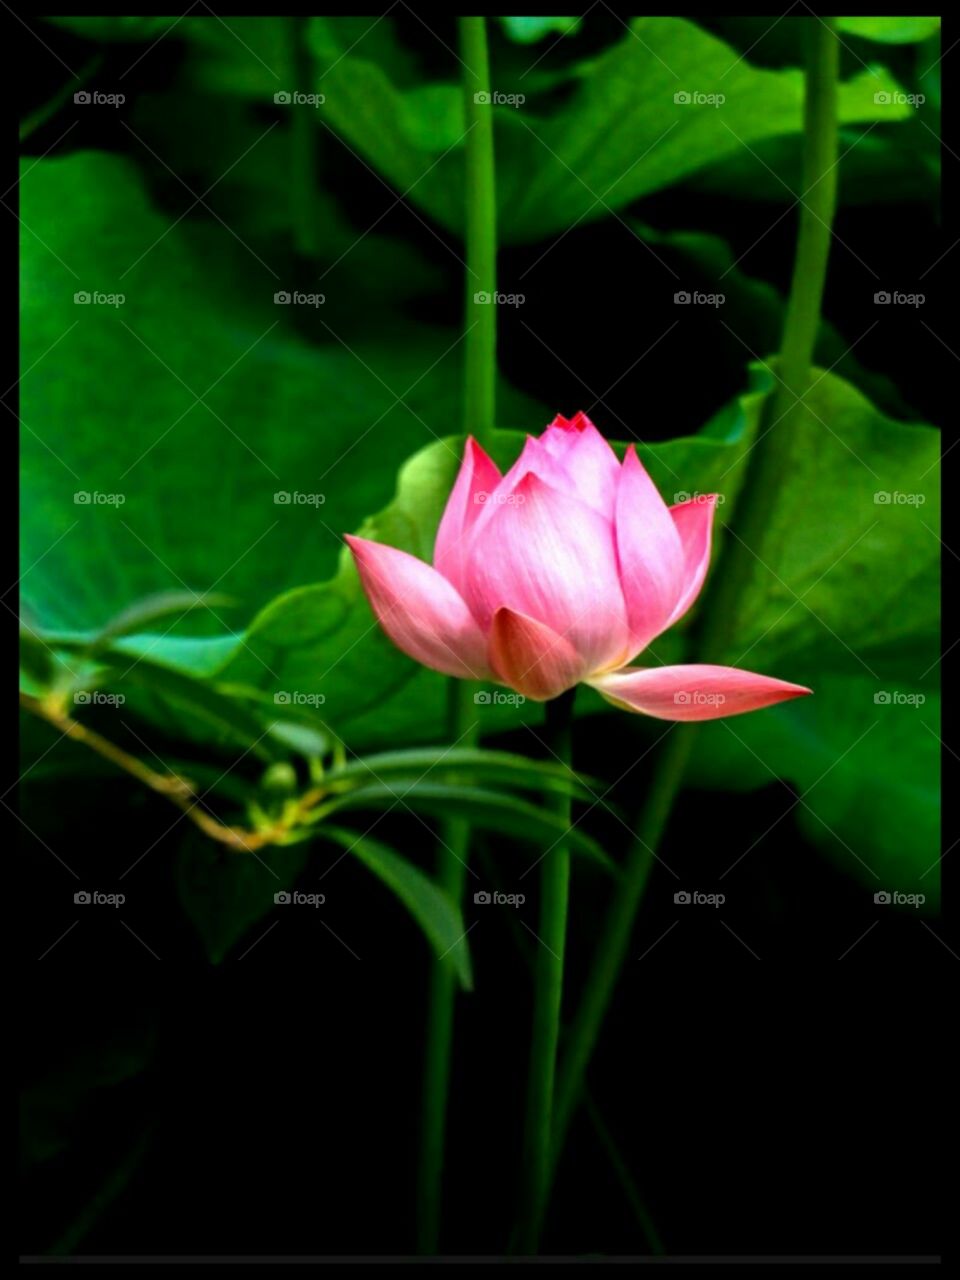 I love lotus flower